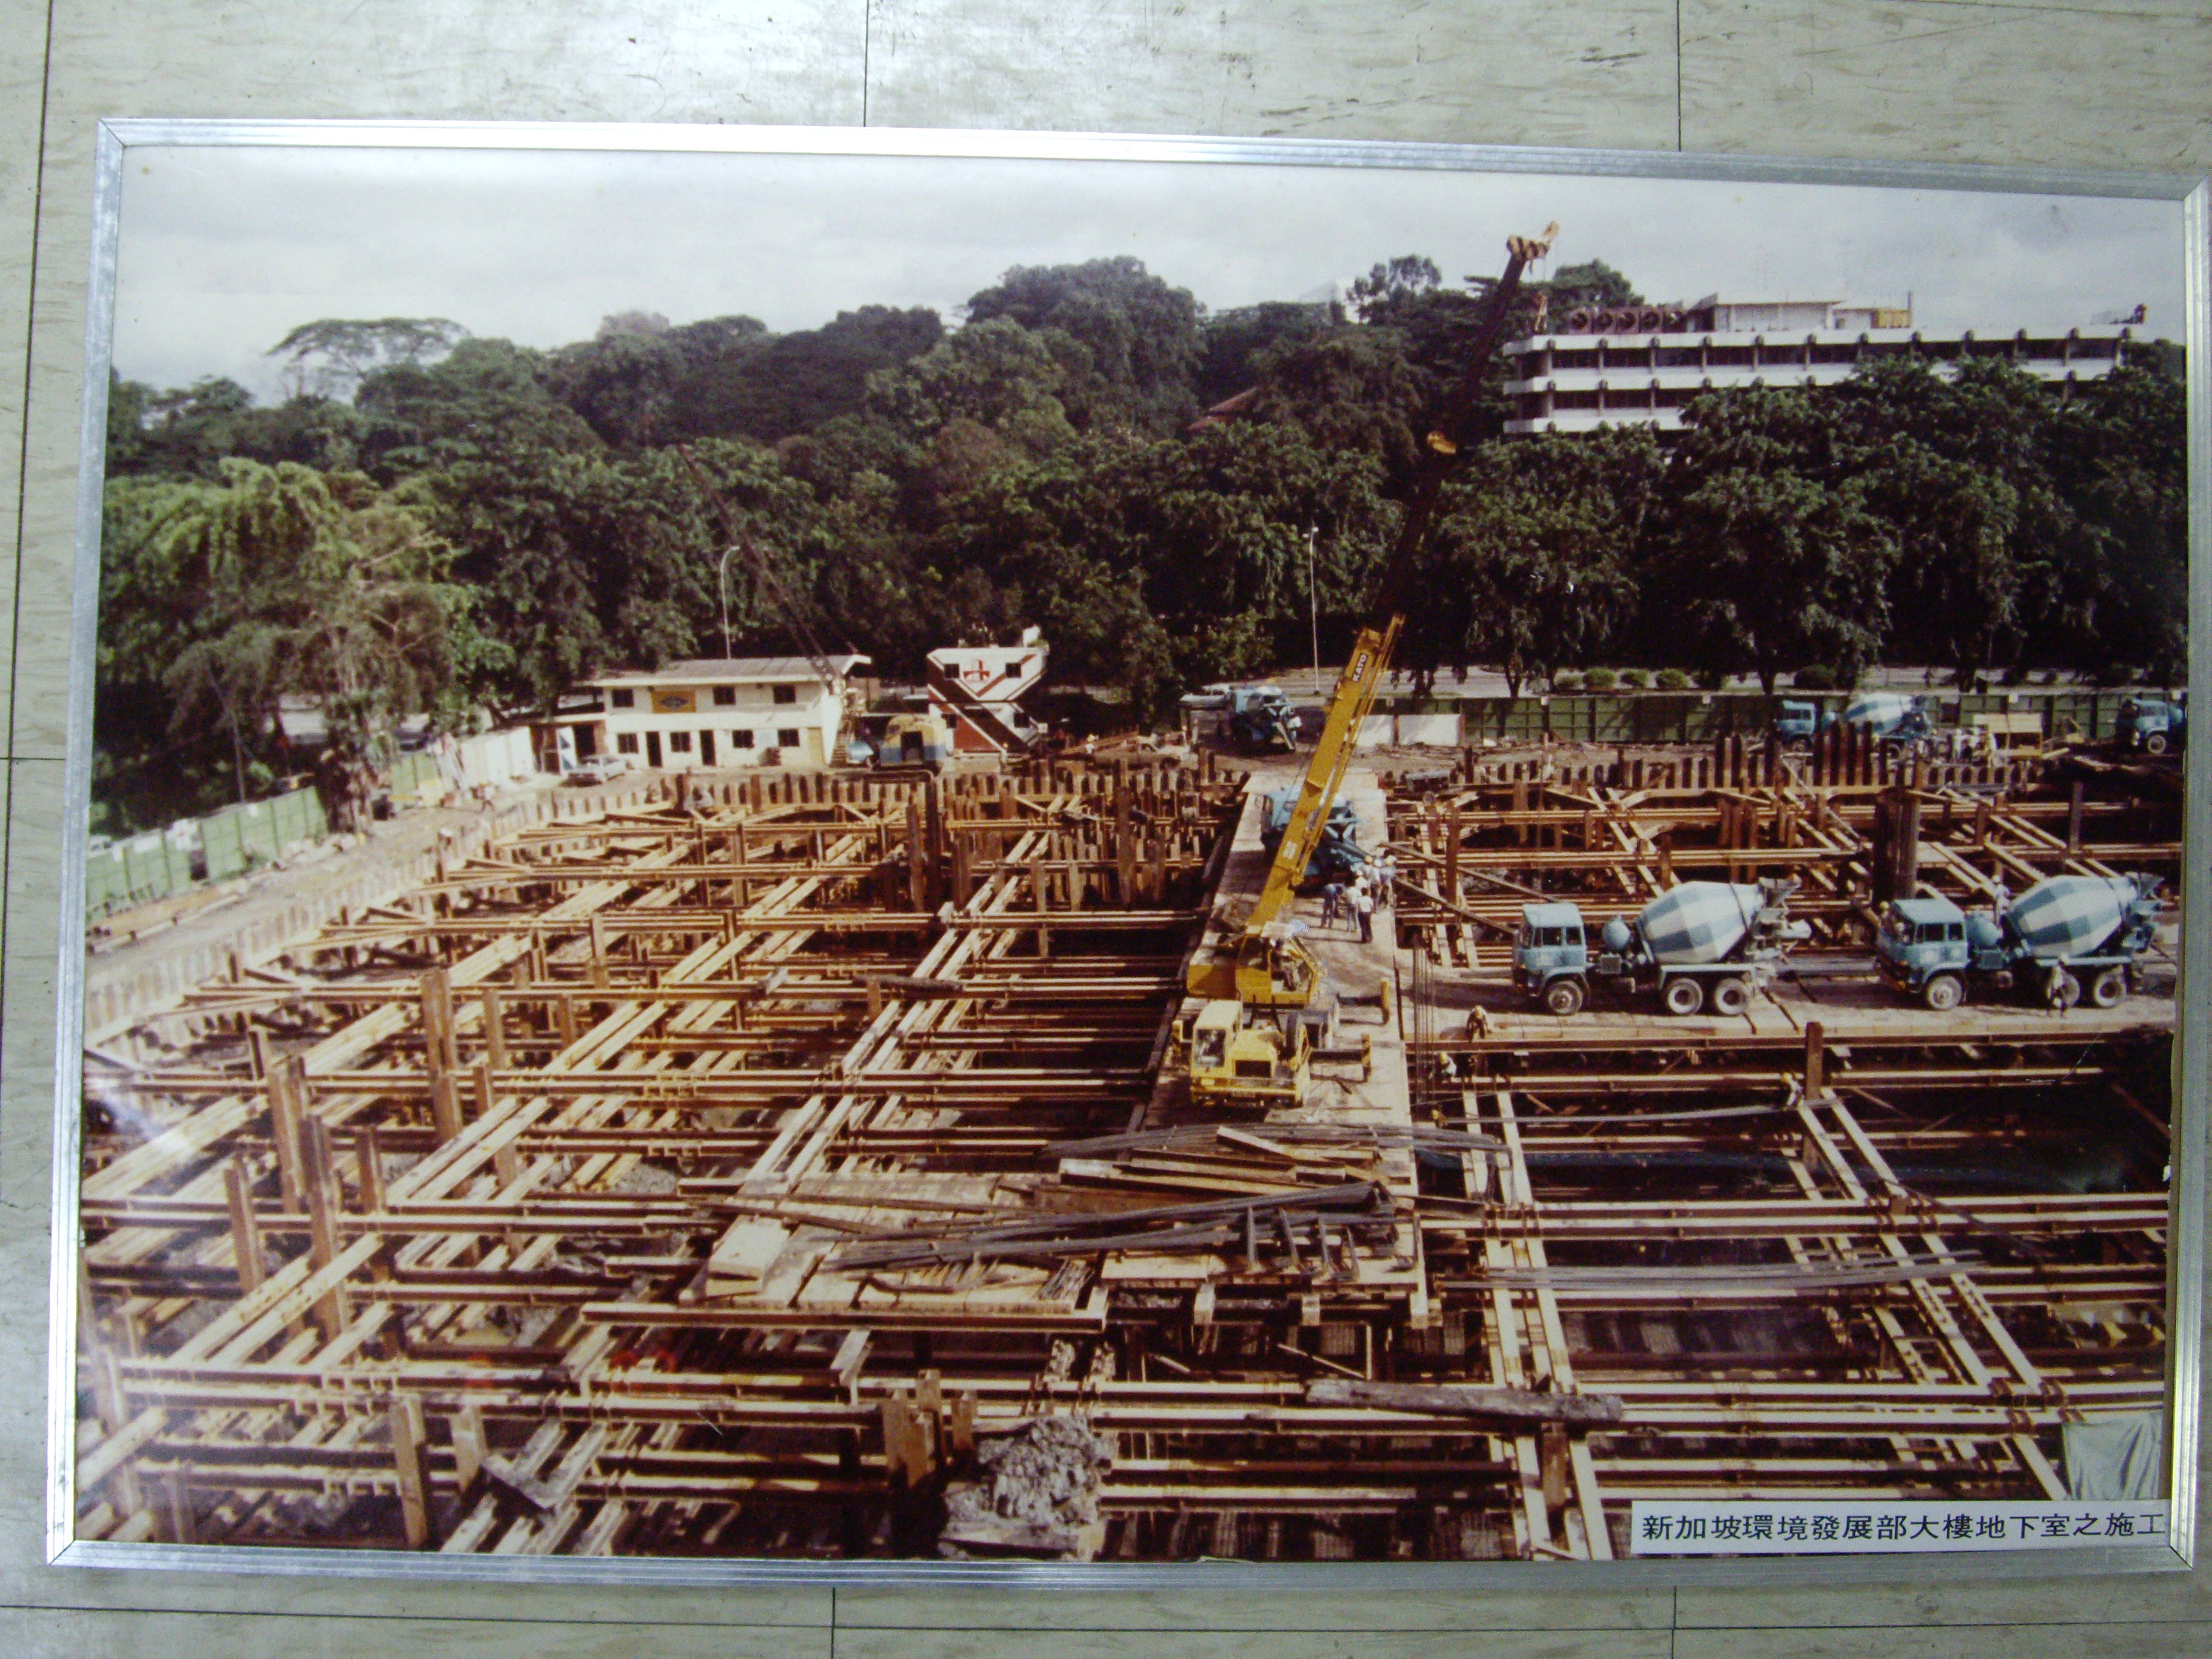 新加坡環境發展部大樓地下室施工(裱框照)